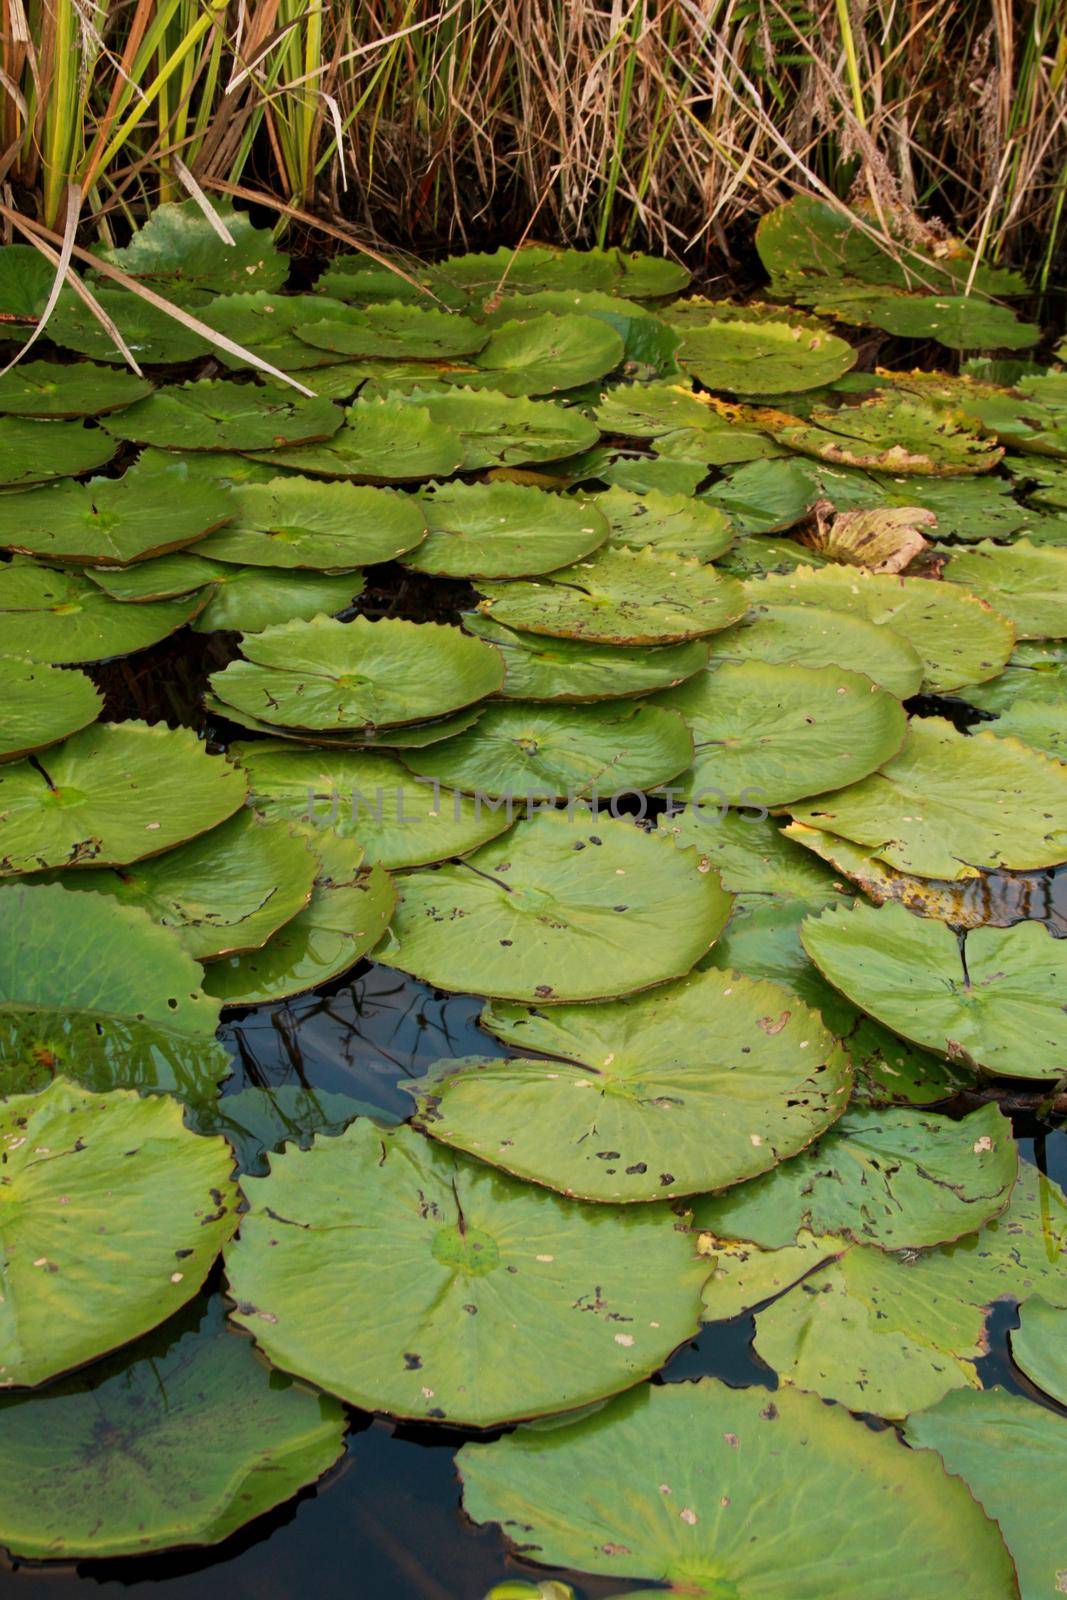 aquatic plant vitoria regia in pond by joasouza